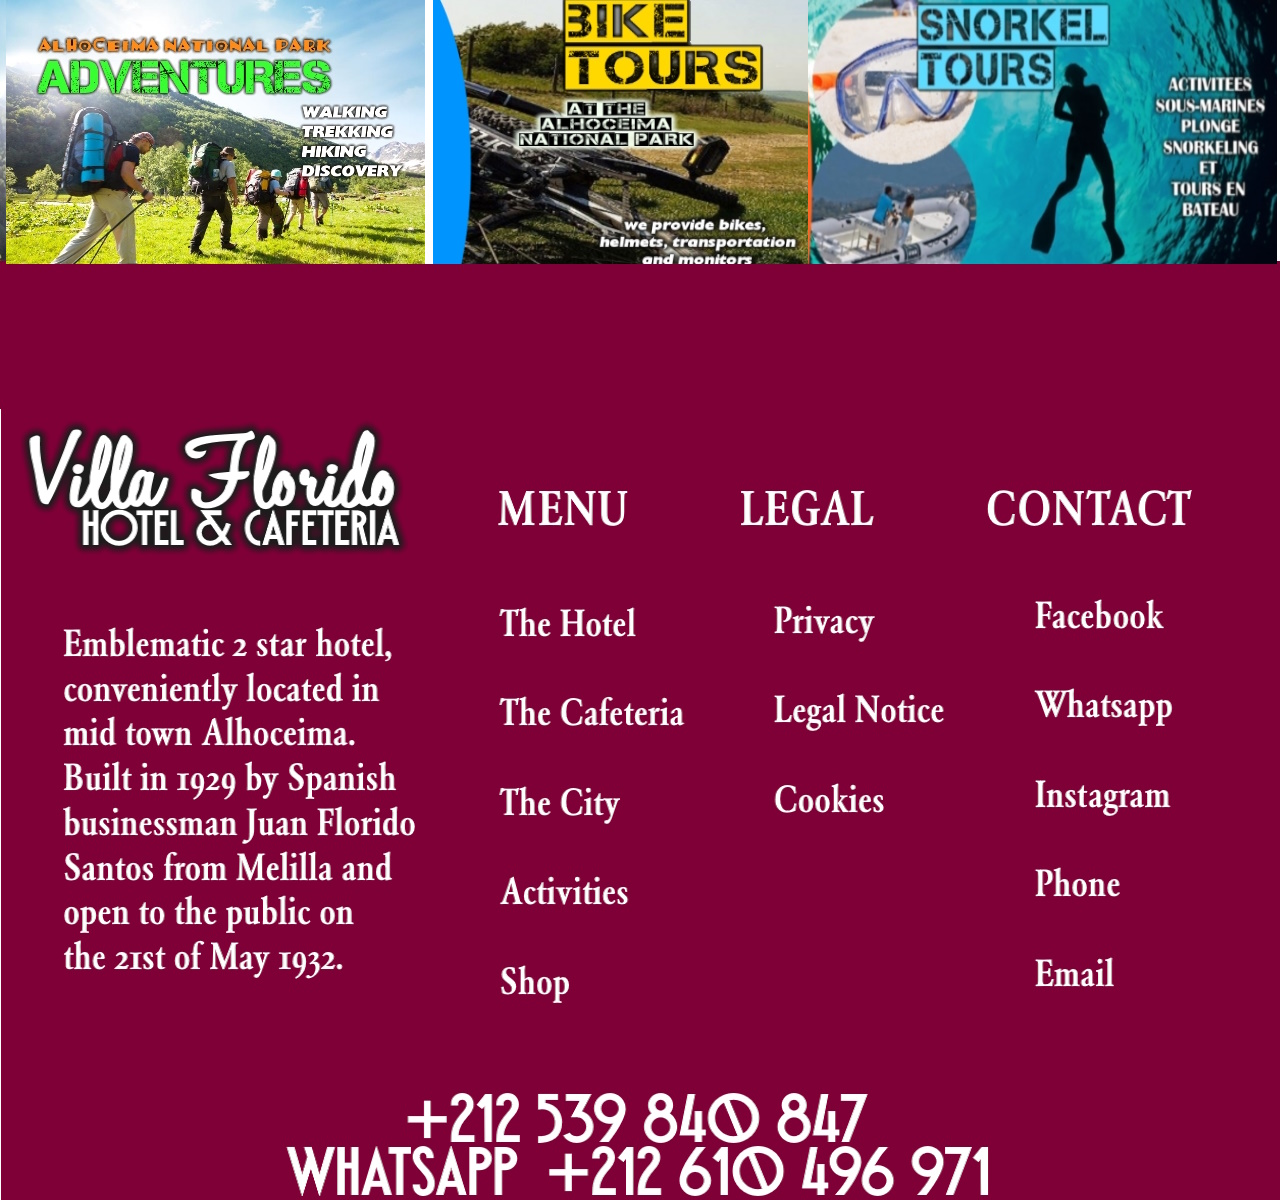 menu legal contact